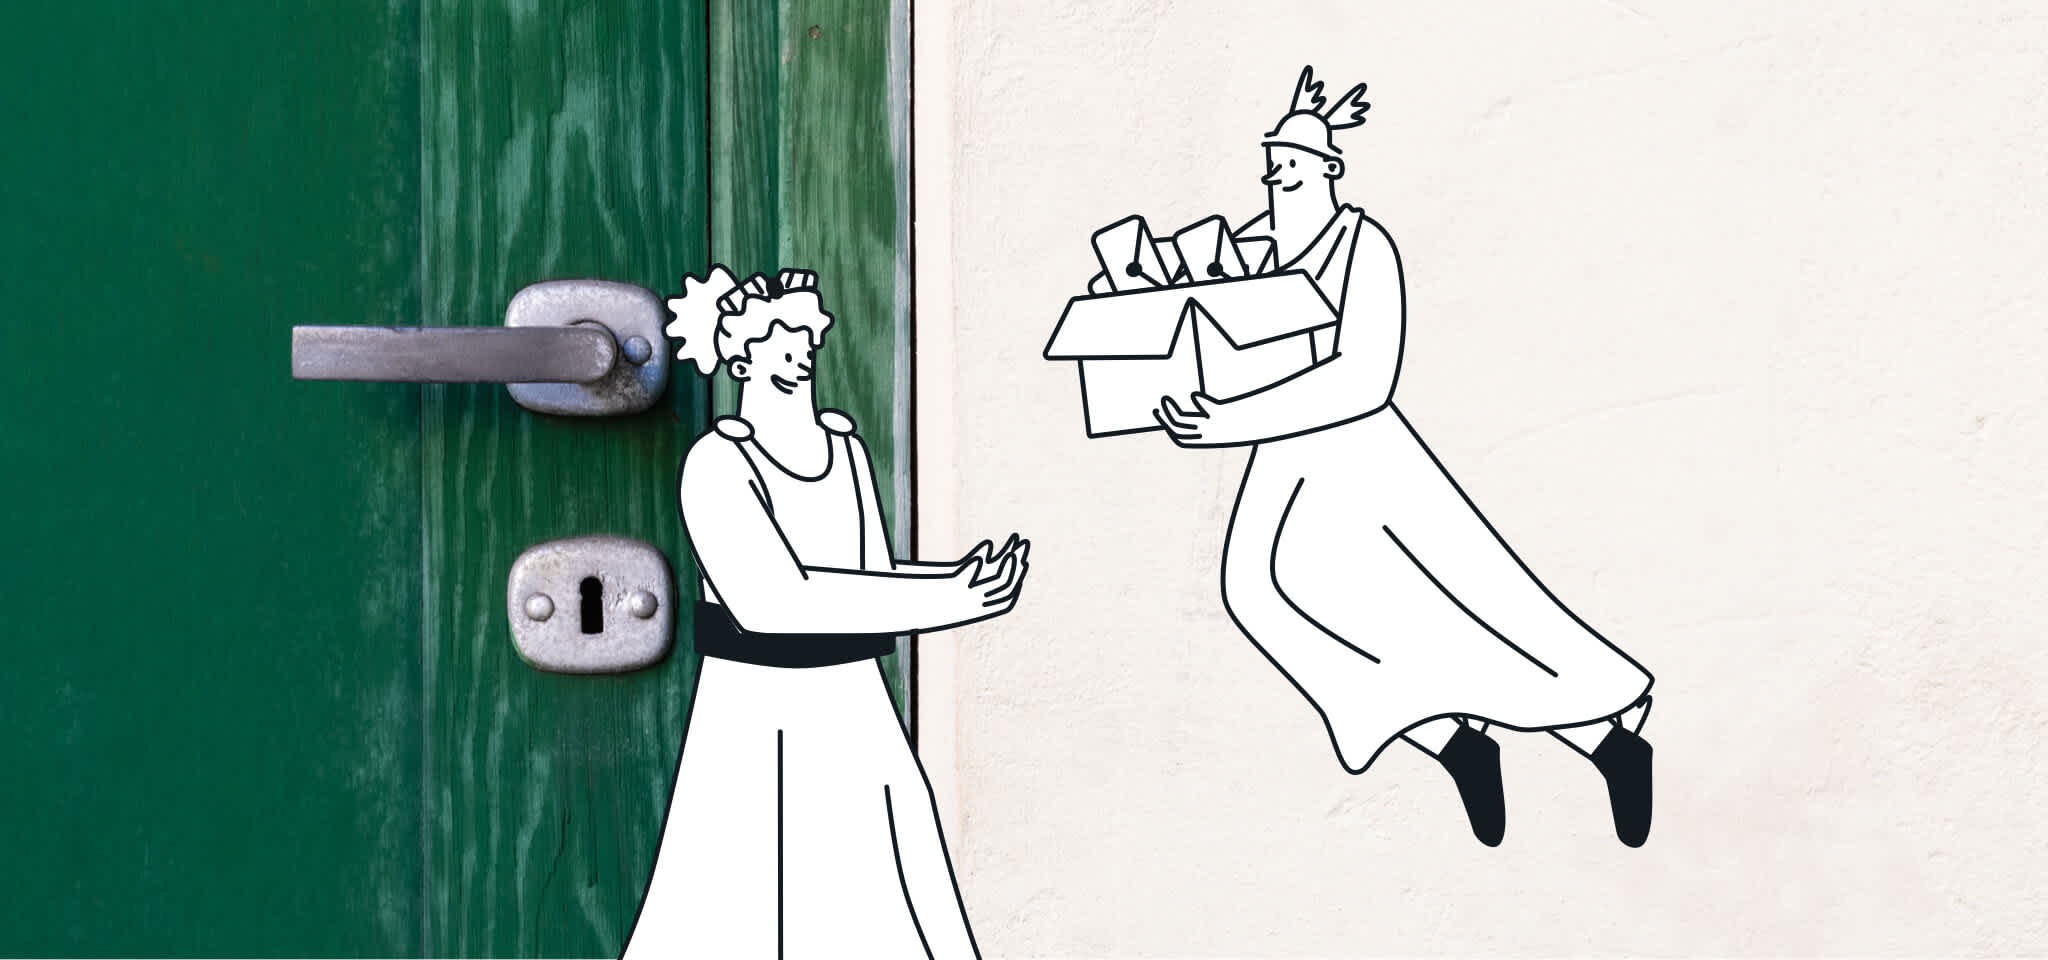 Hermes liefert die Post an eine Göttin durch eine grüne Tür